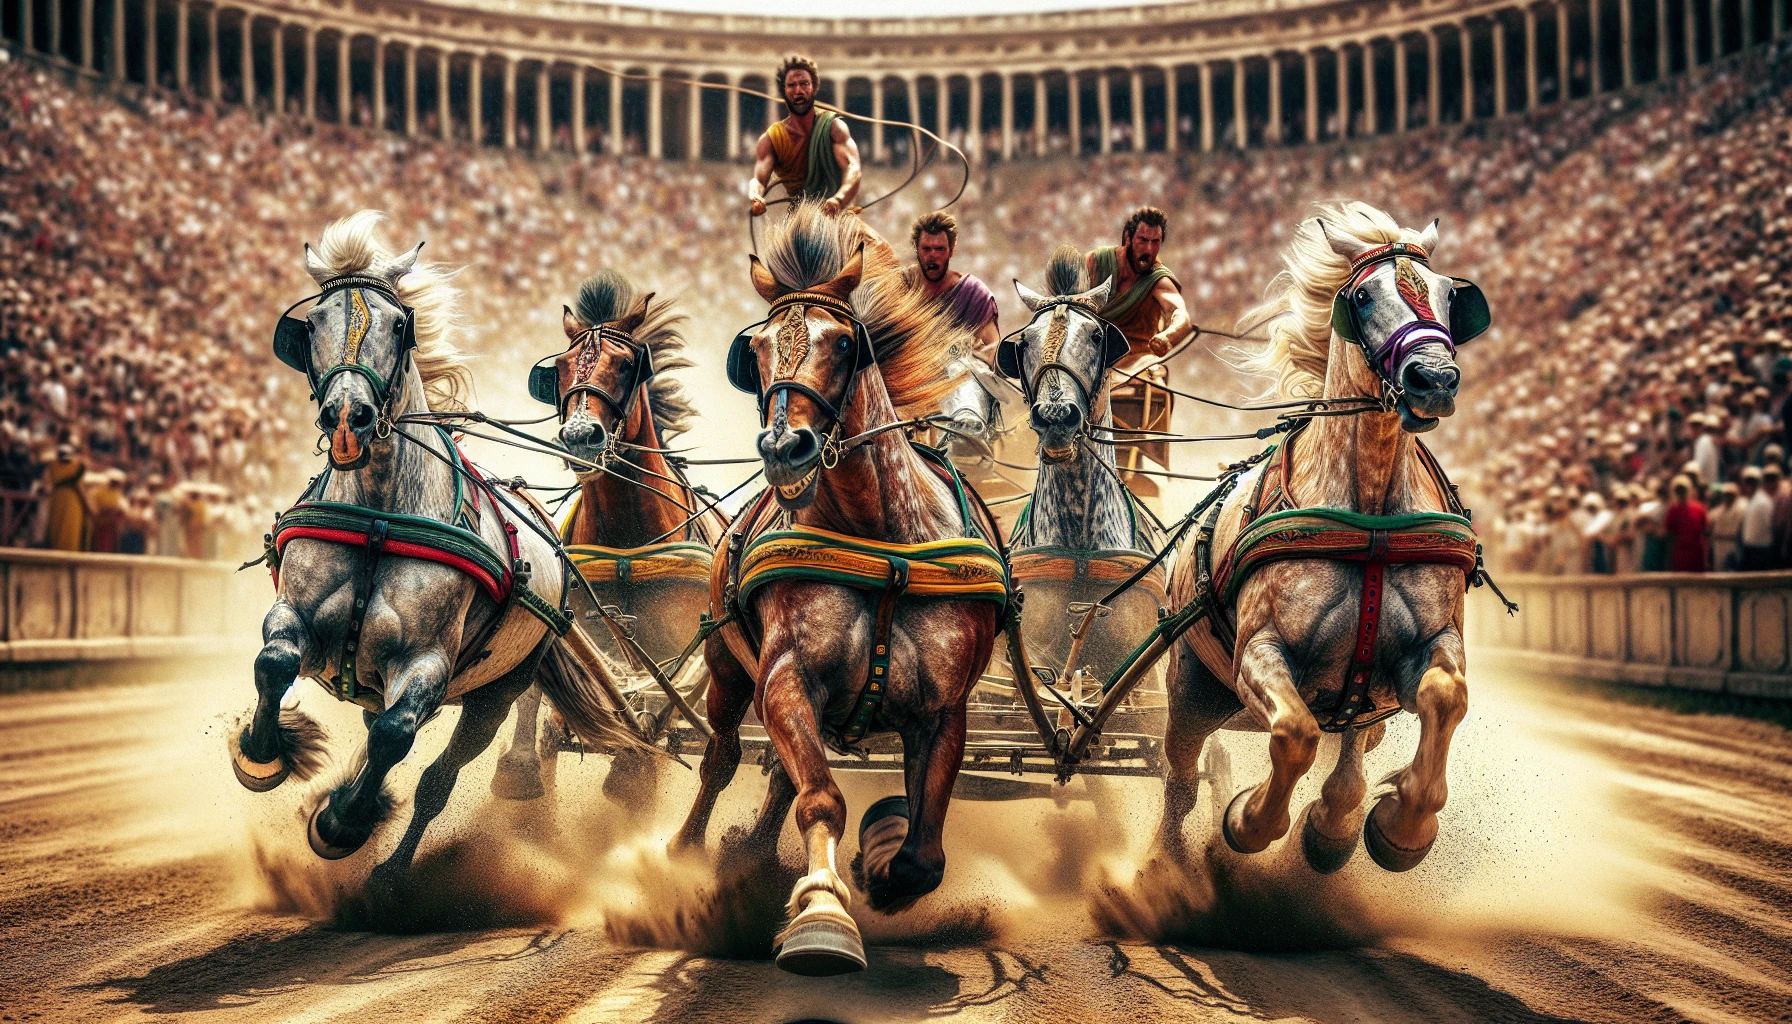 Chariot racing at Circus Maximus